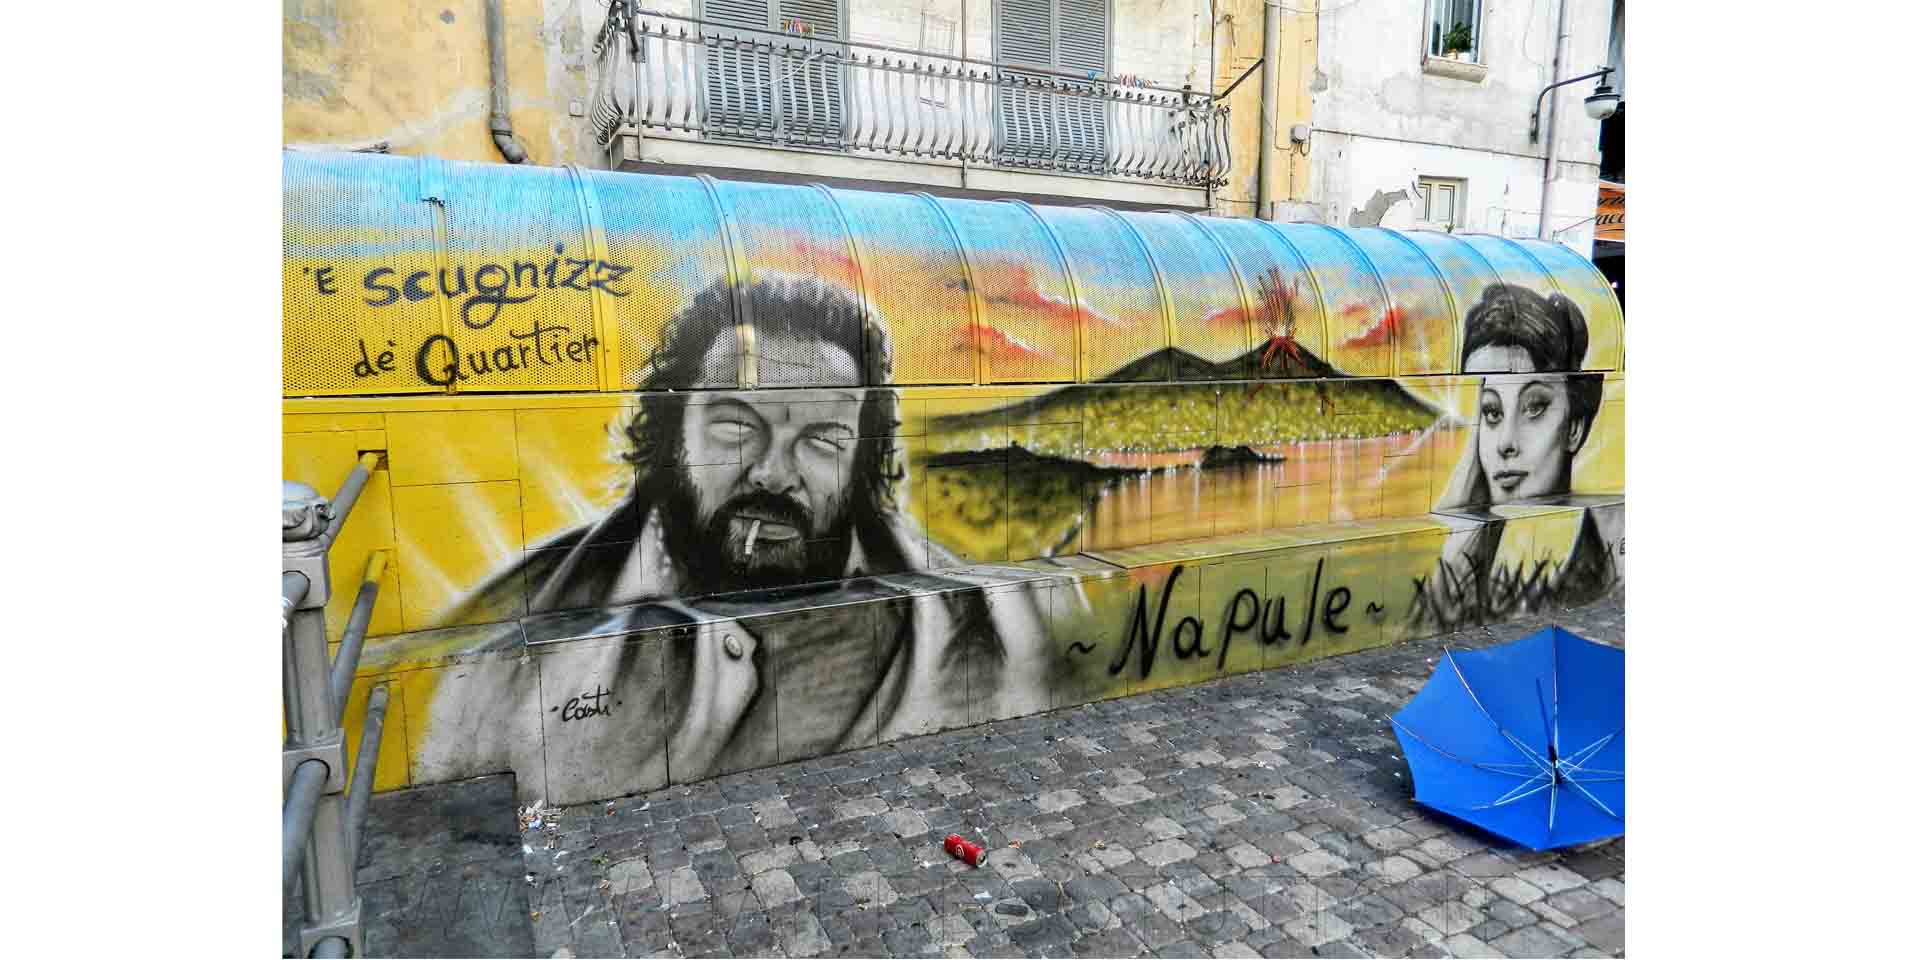 Napoli esempio di street art ai quartieri spagnoli, immagine di Bud Spencer e Sophia Loren